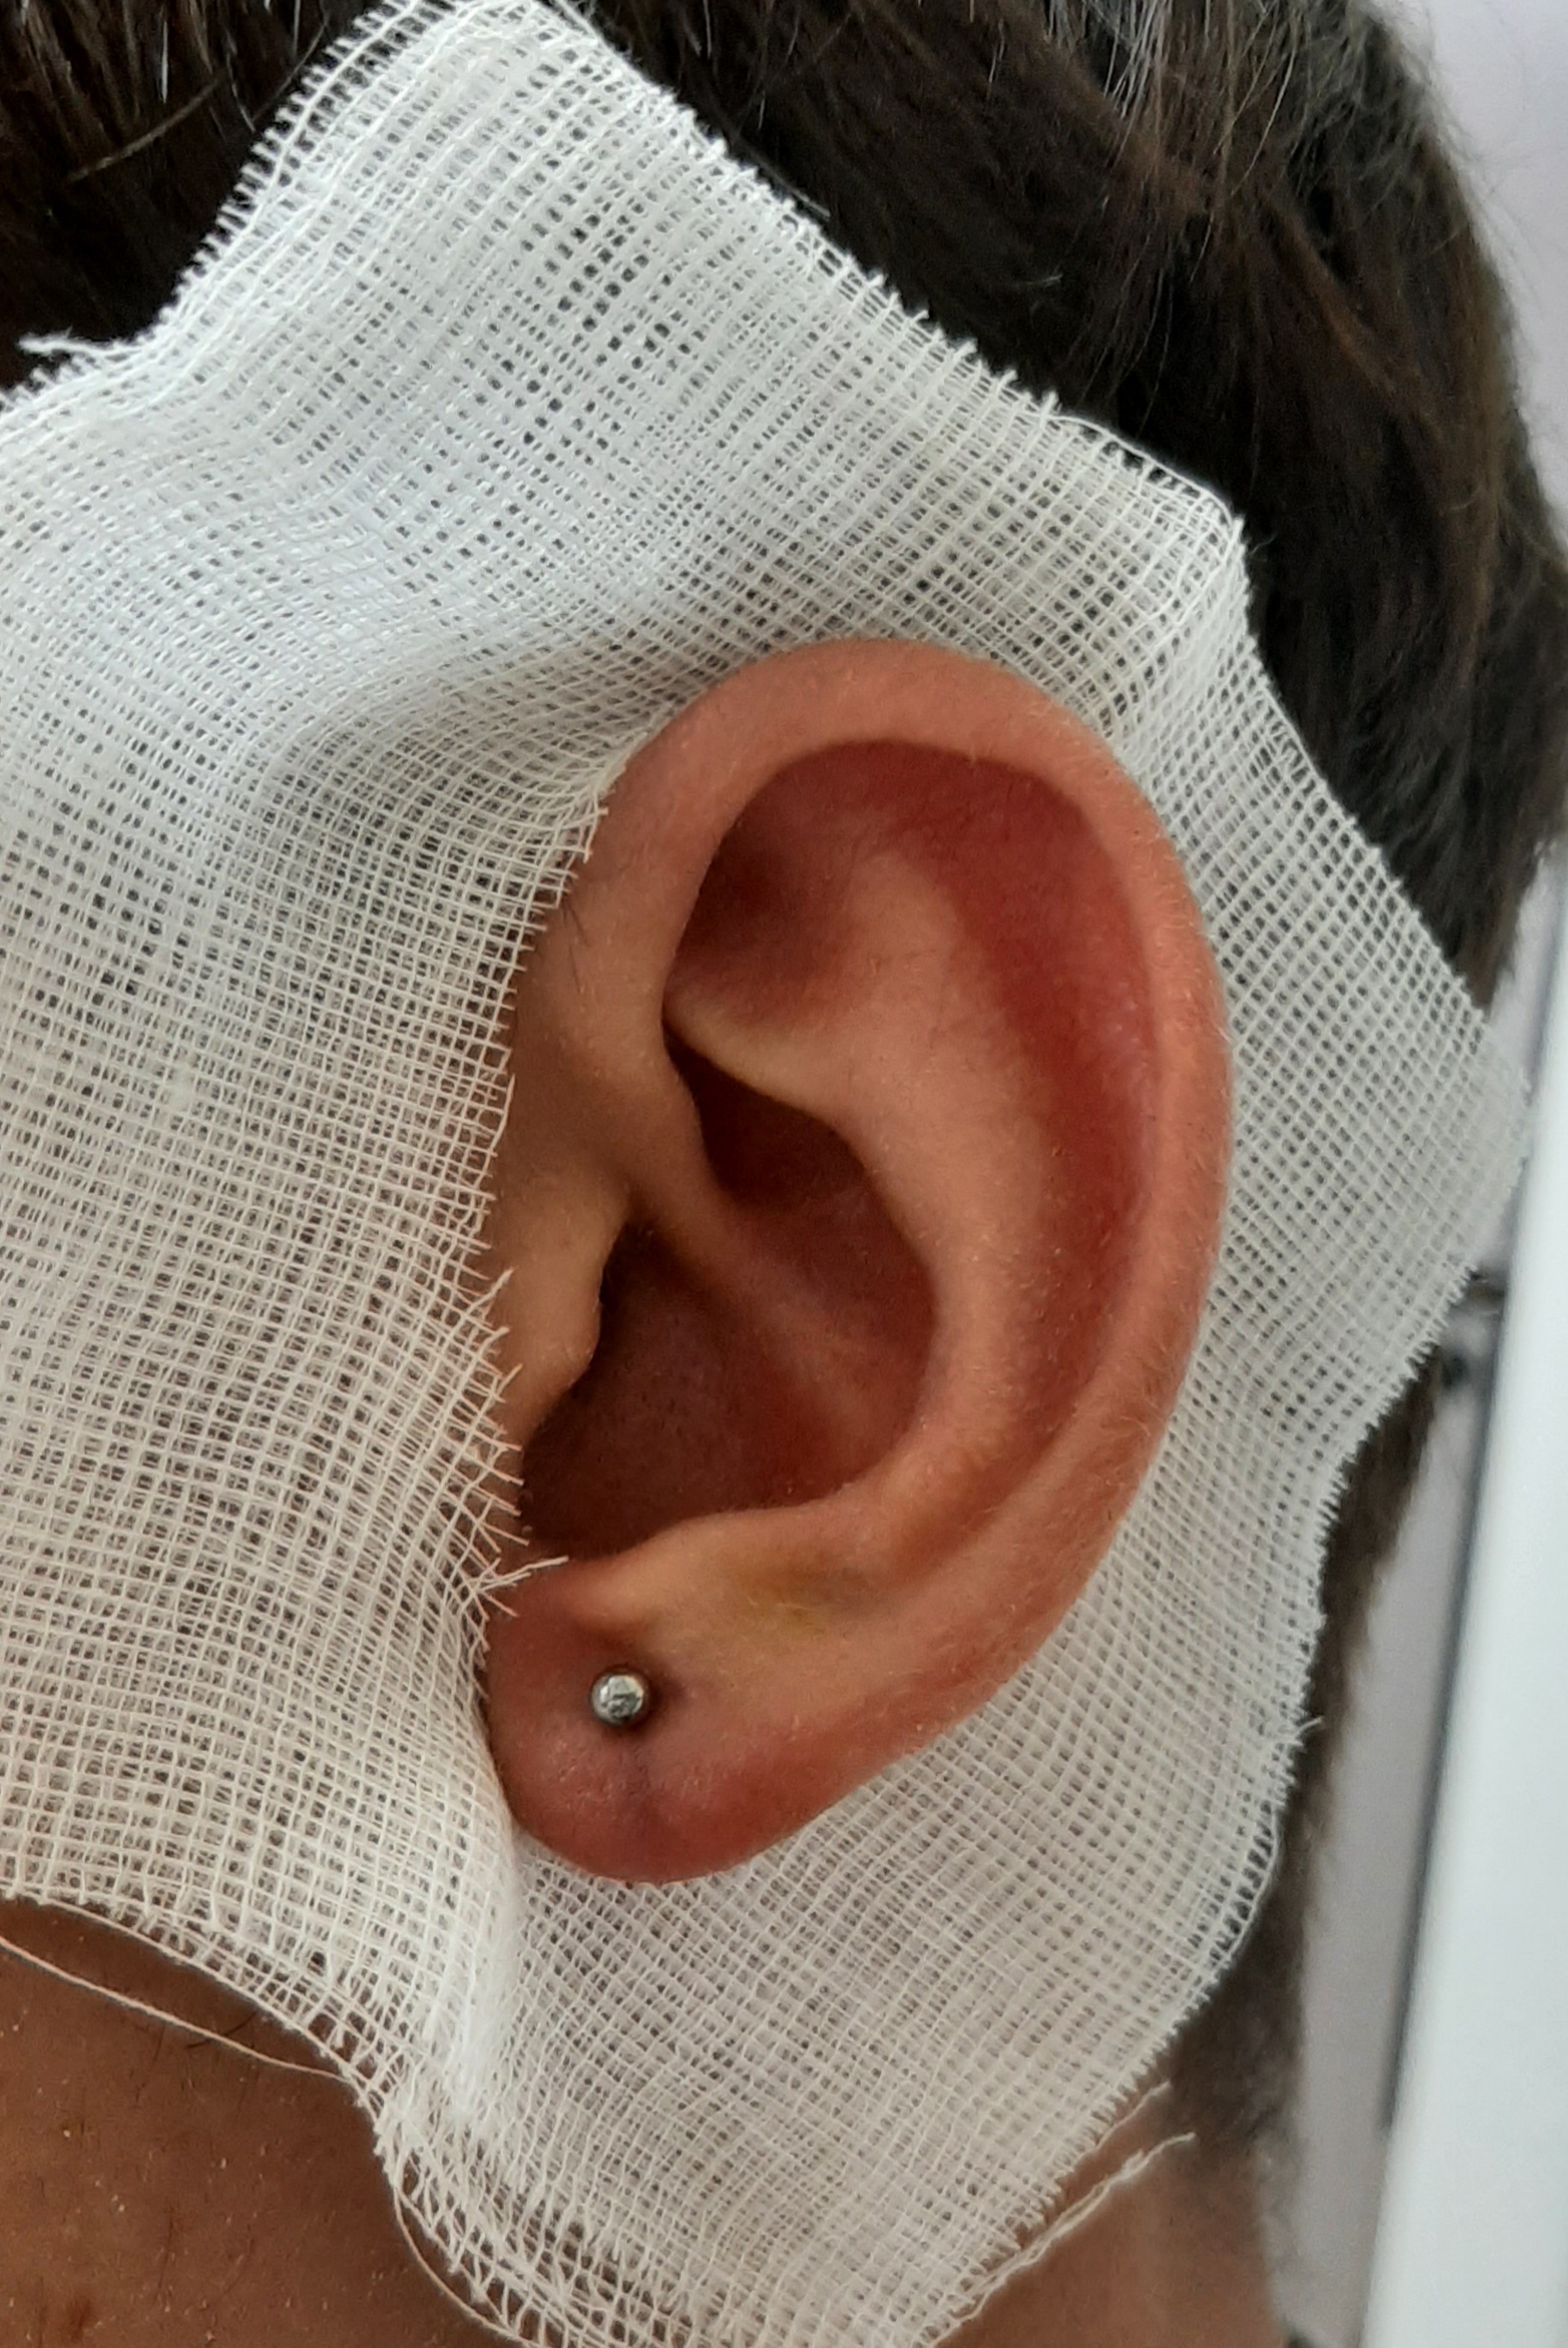 Ear lobe piercing